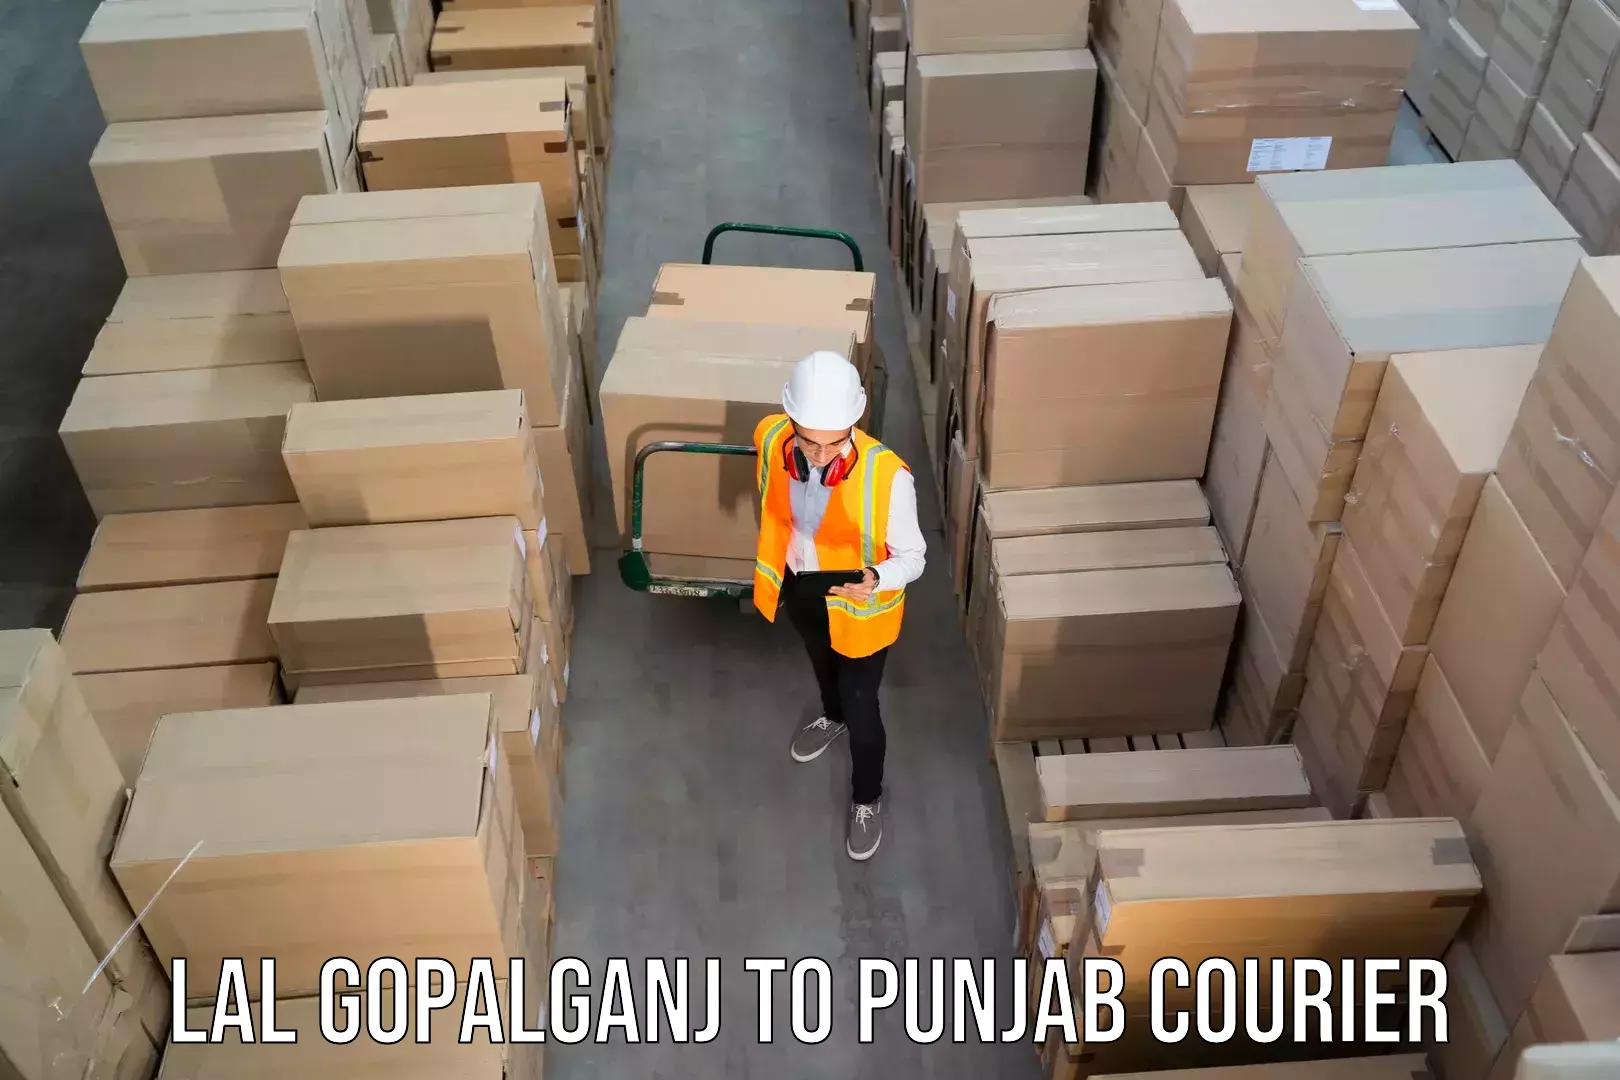 Customer-centric shipping Lal Gopalganj to Mohali